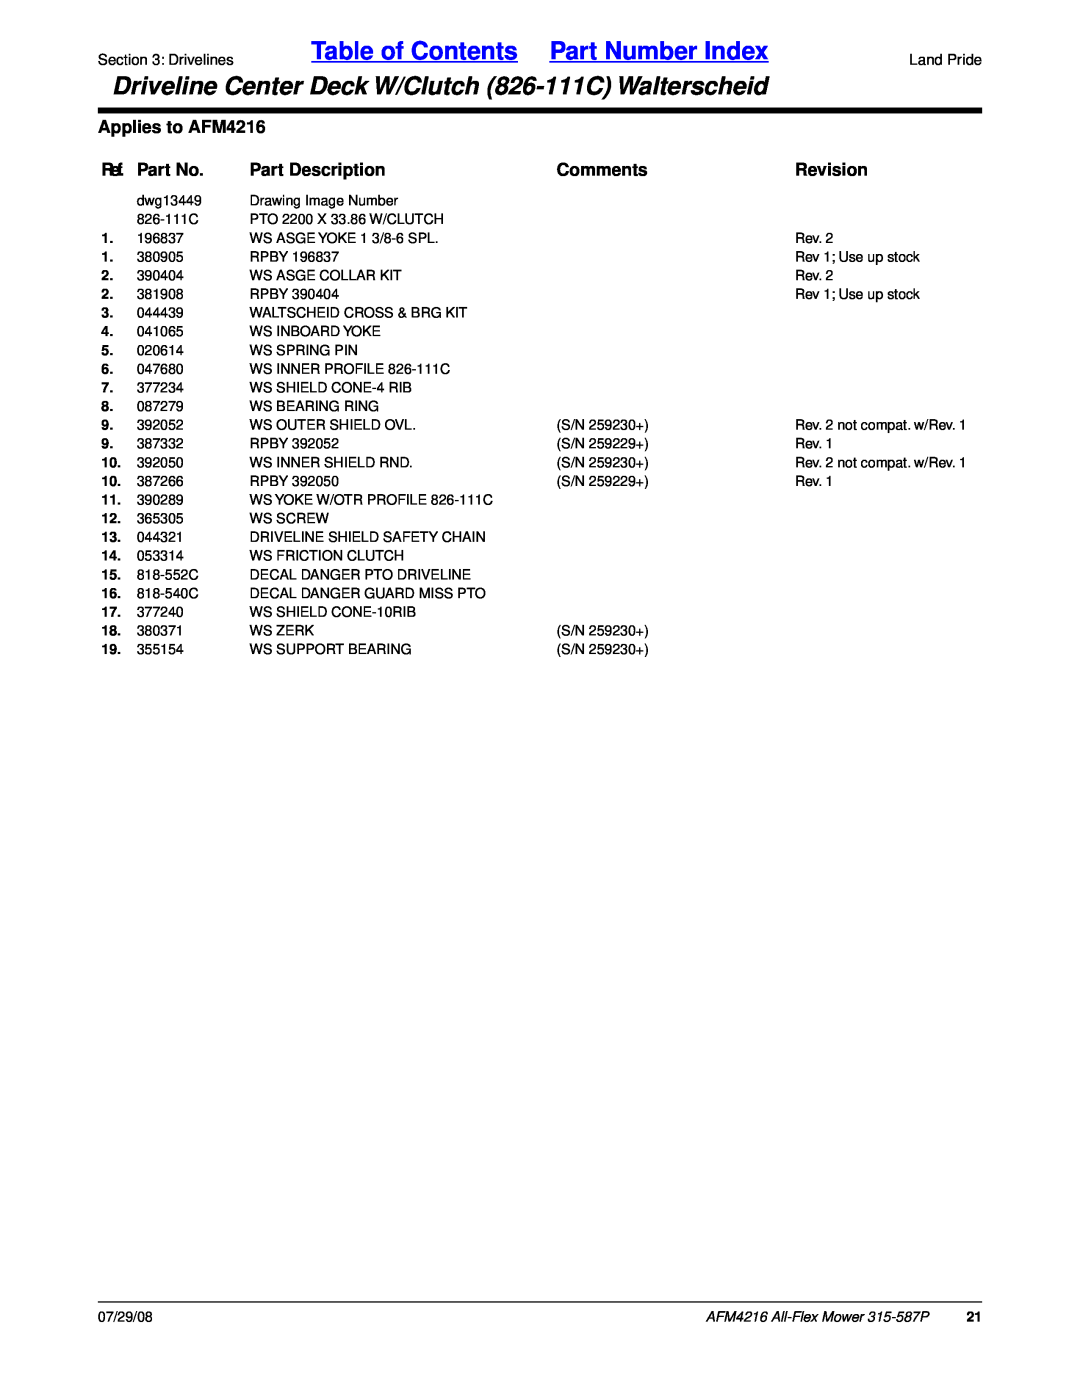 Land Pride Table of Contents Part Number Index, Applies to AFM4216, Ref. Part No, Part Description, Comments, Revision 